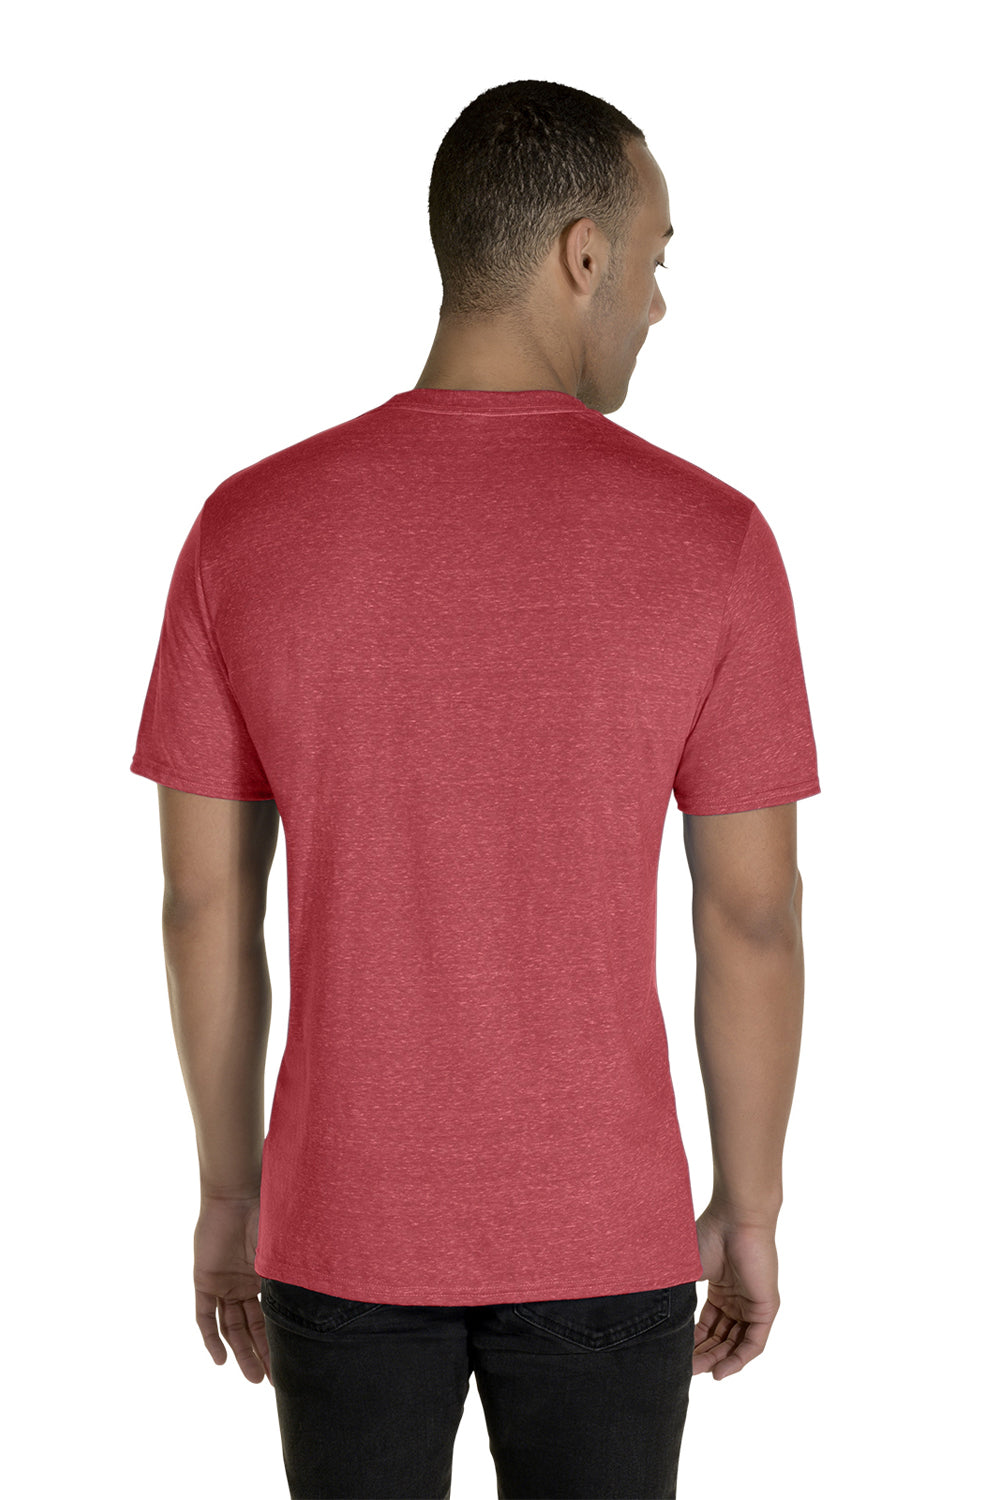 Jerzees 88MR Mens Vintage Snow Short Sleeve Crewneck T-Shirt Heather Red Back